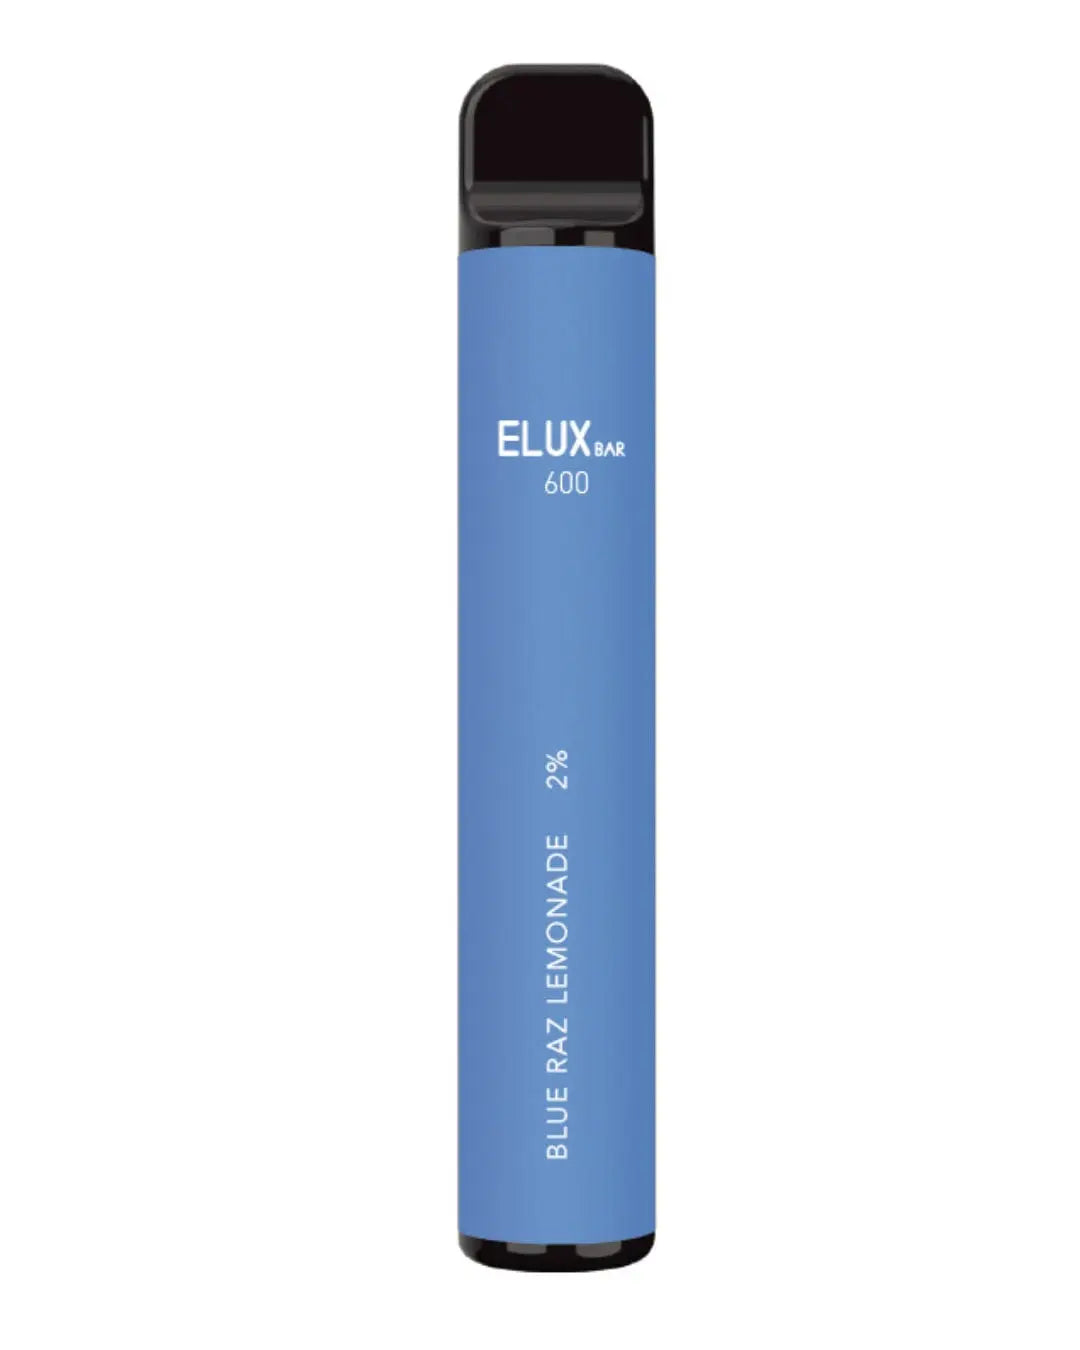 Elux Bar 600 Blue Razz Lemonade Disposable Vapes